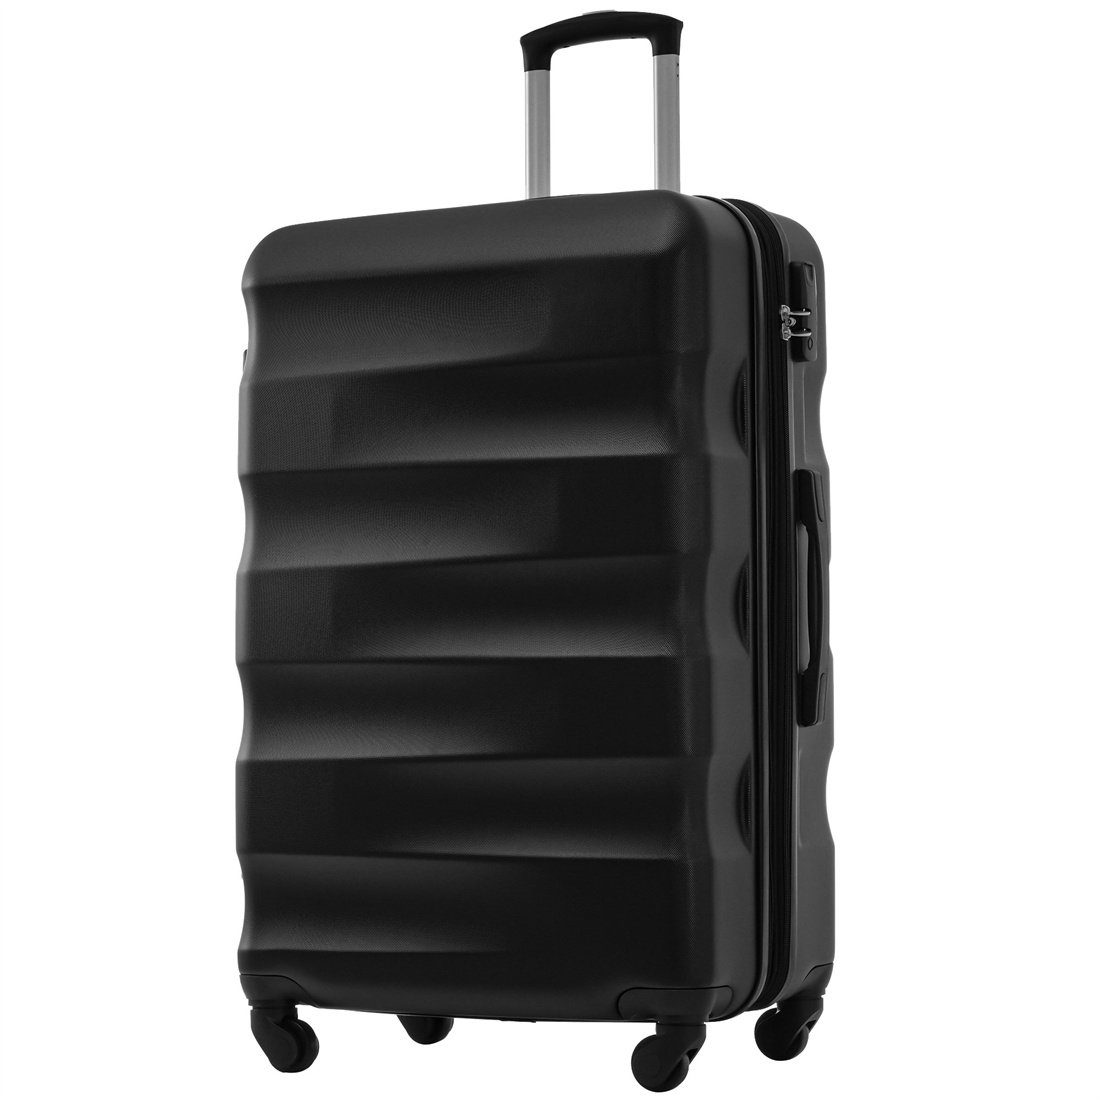 DÖRÖY Koffer Hartschalen-Koffer, Reisekoffer, 69*44.5*26.5cm, ABS-Material schwarz